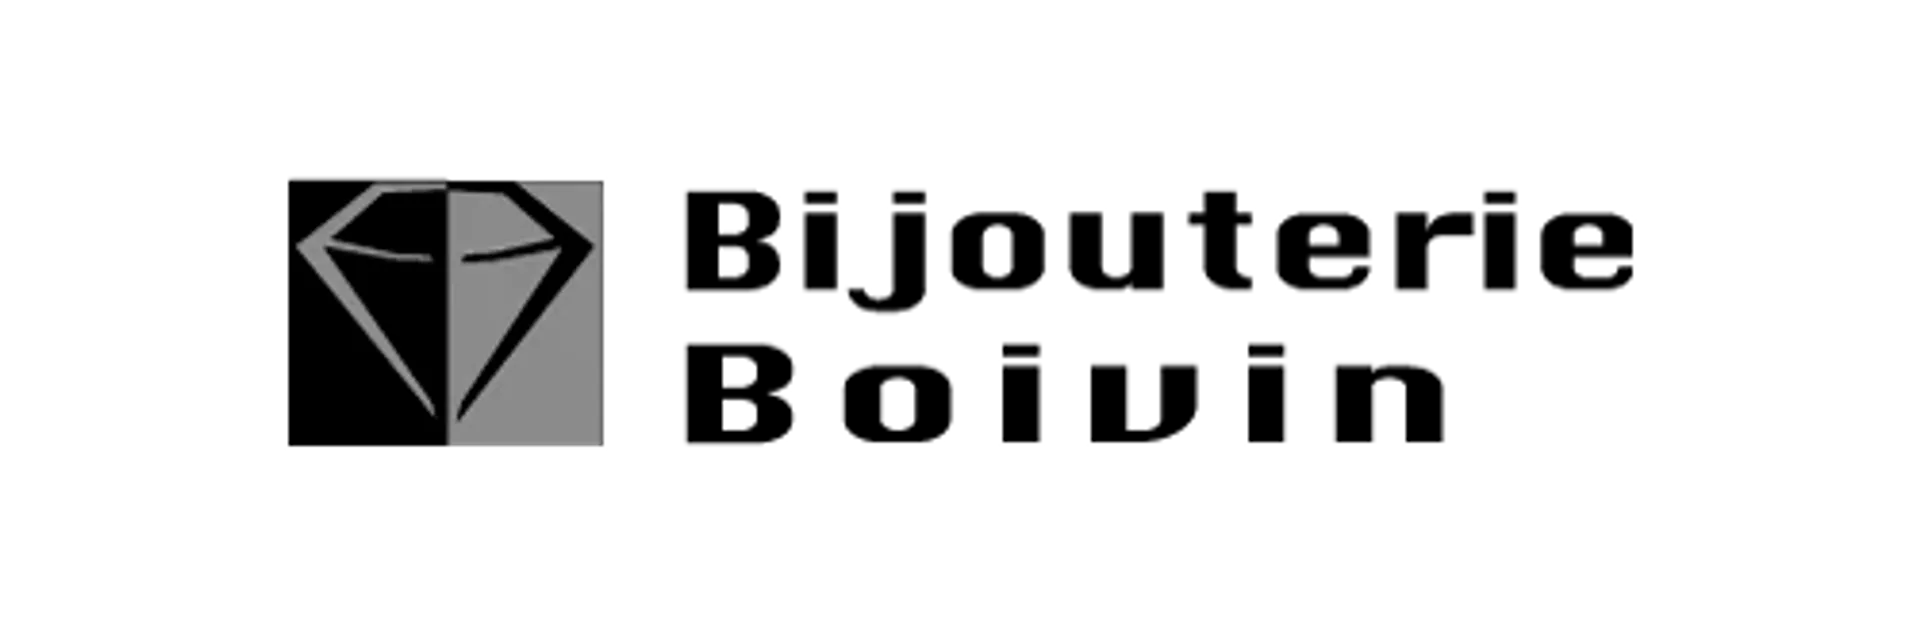 BIJOUTERIE BOIVIN logo de circulaires